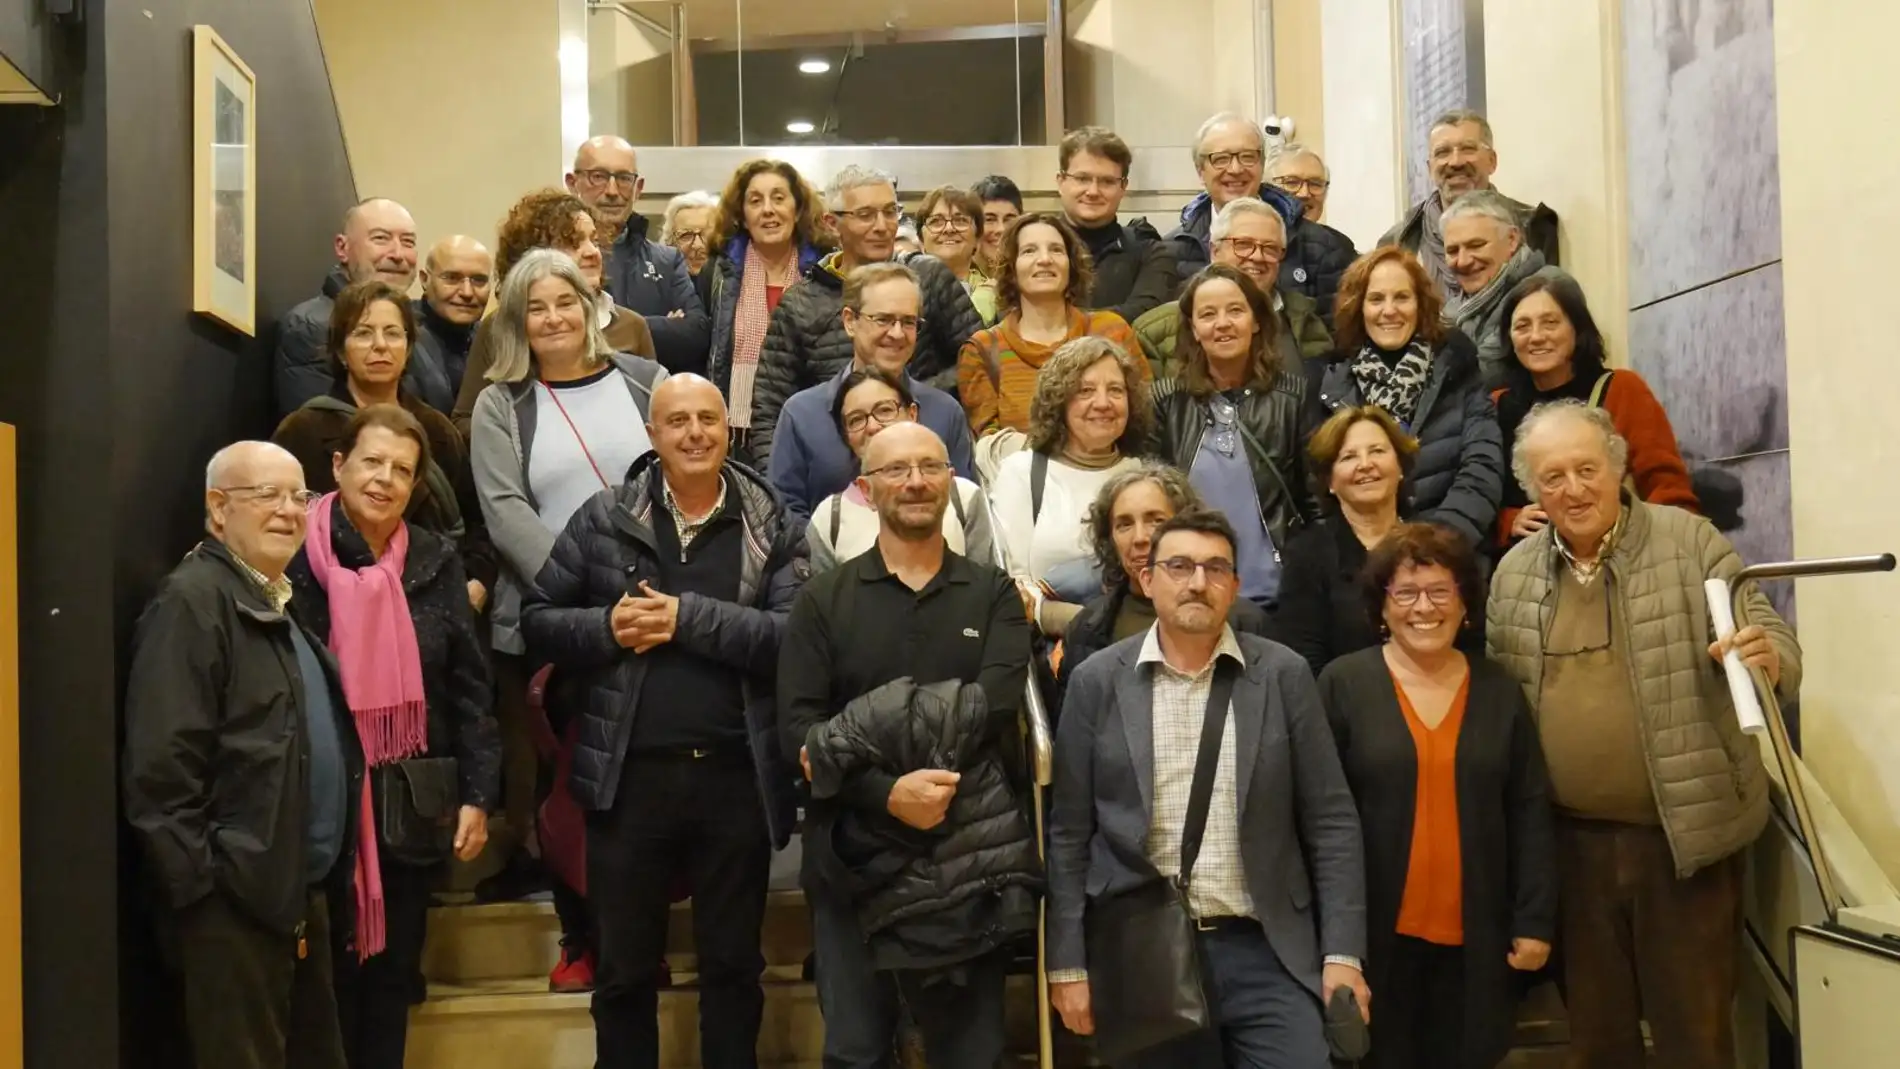 Más de 300 profesionales de Baleares se han unido en el grupo 'Sanitaris per la Llengua', que reivindica aumentar el uso del catalán frente al retroceso observado en el ámbito sanitario